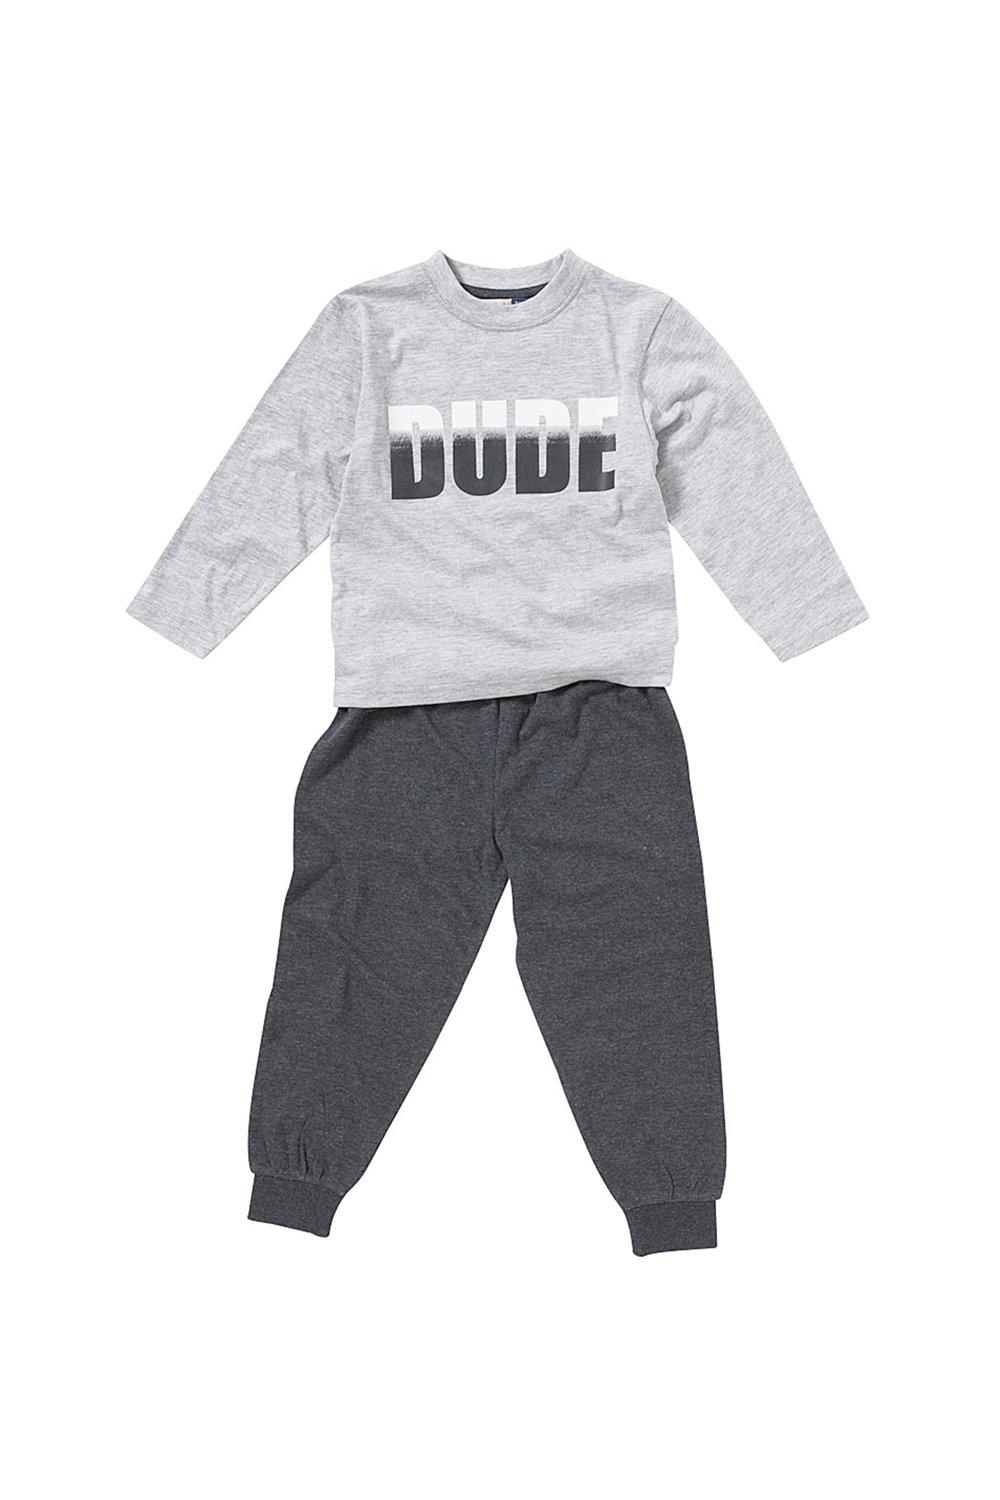 Dude Print Pyjama Set